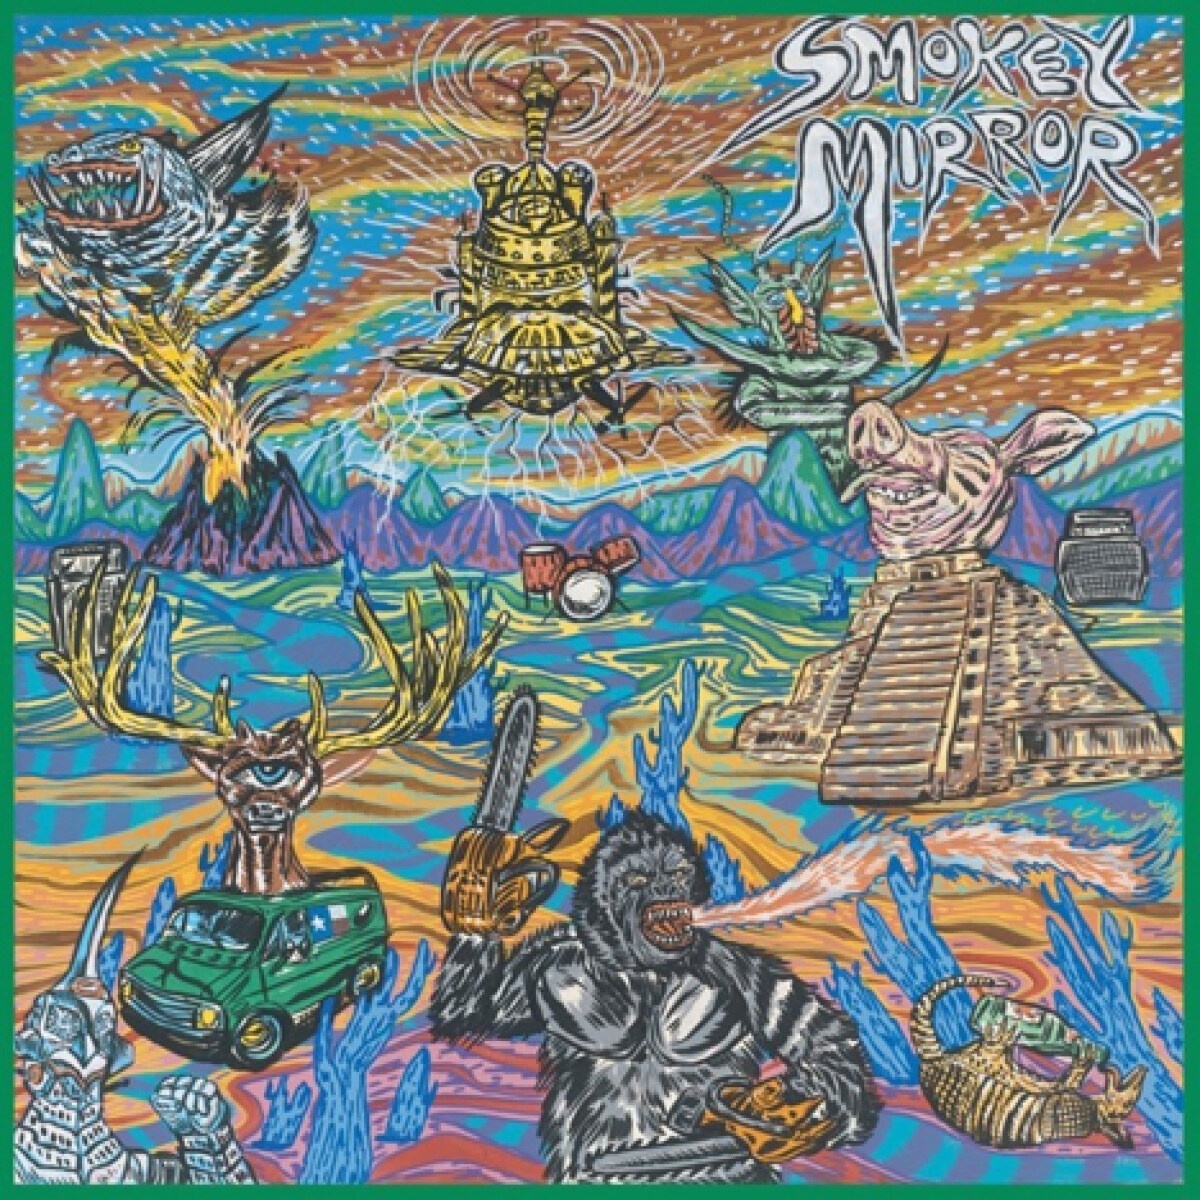 Smokey Mirror - Smokey Mirror. (CD)